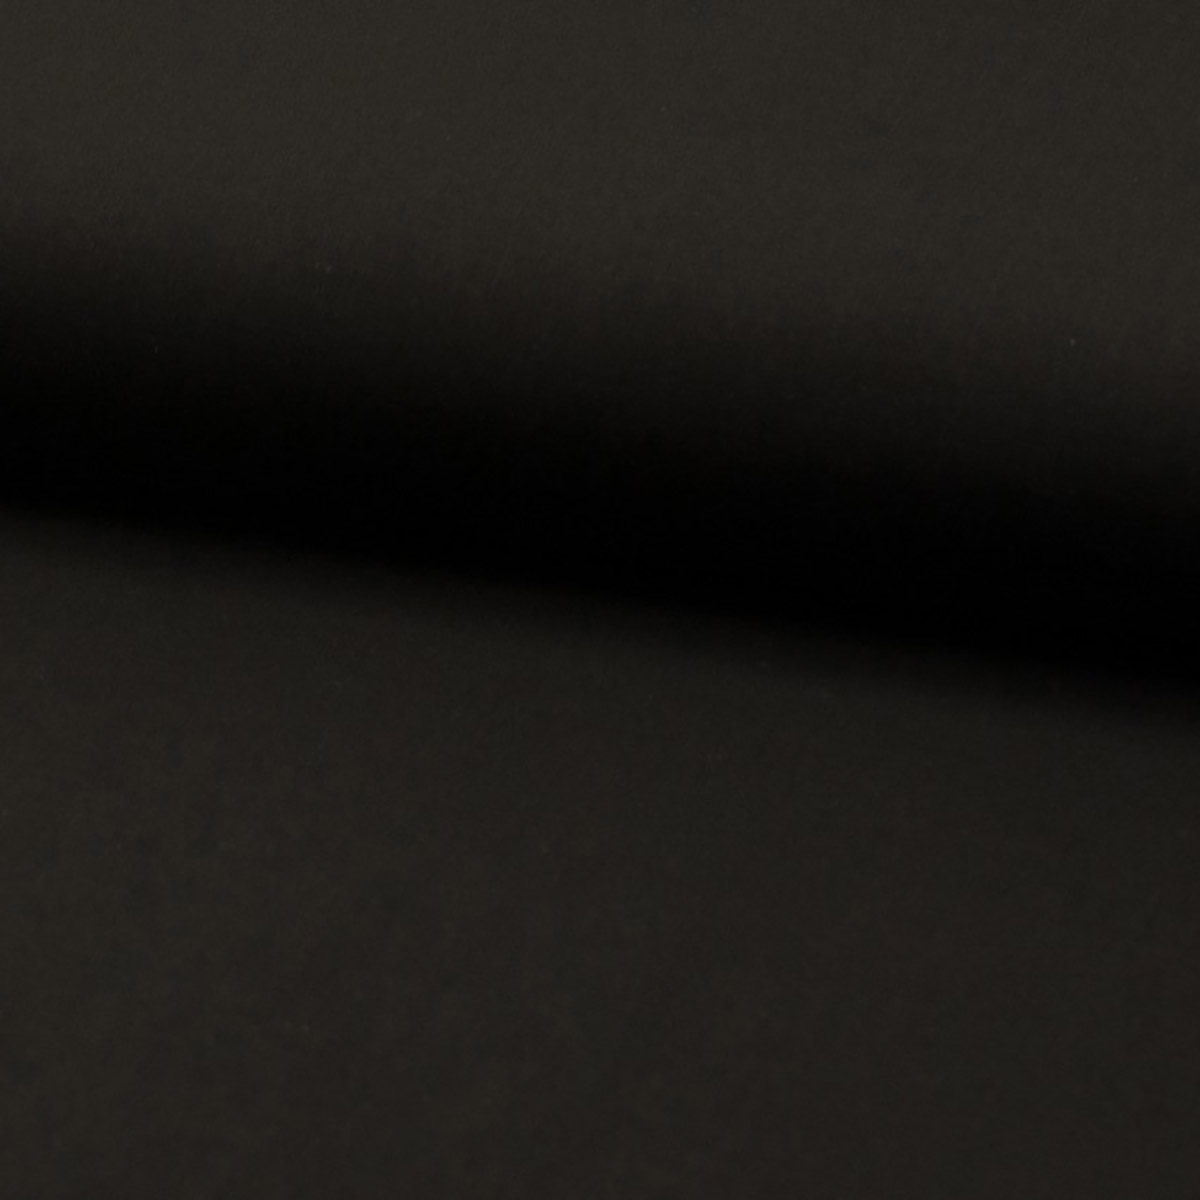 Baumwoll-Batist schwarz, kochfest, 100% Baumwolle, 140 cm breit